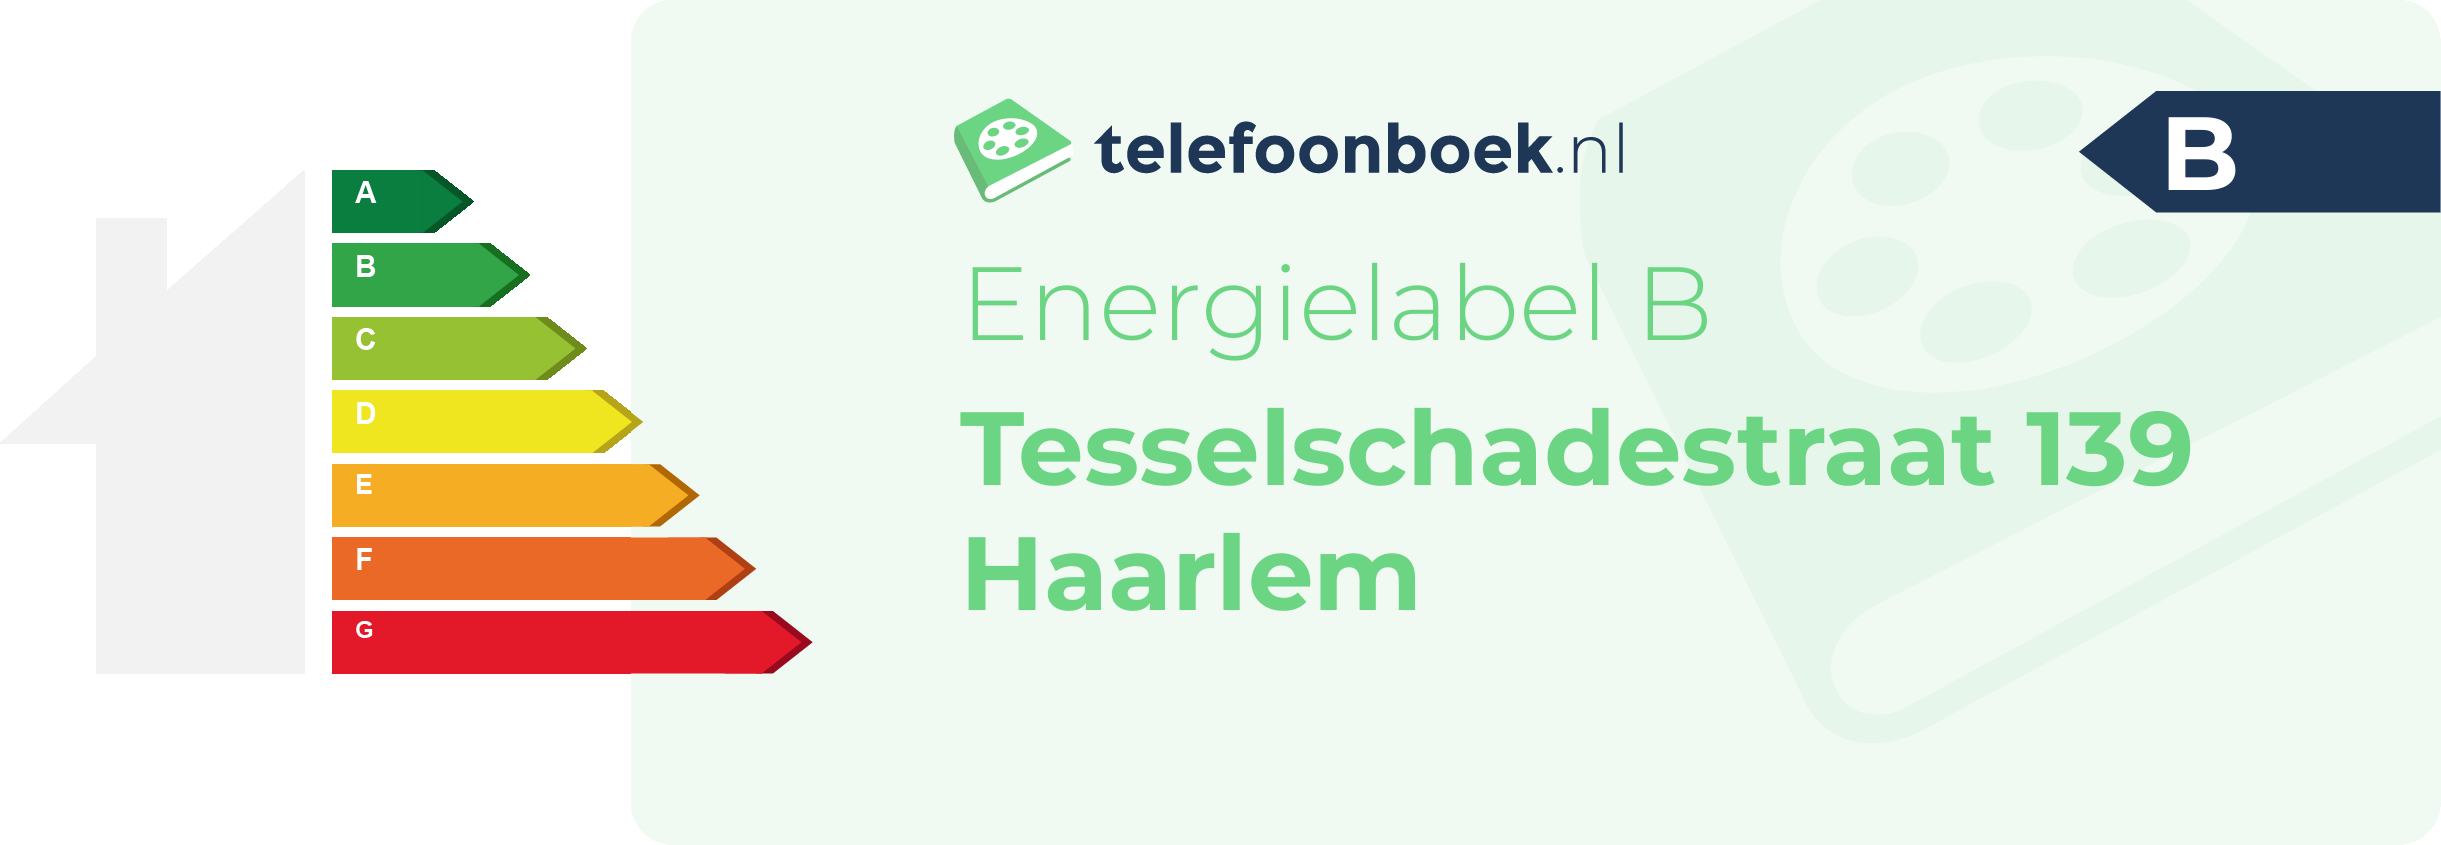 Energielabel Tesselschadestraat 139 Haarlem